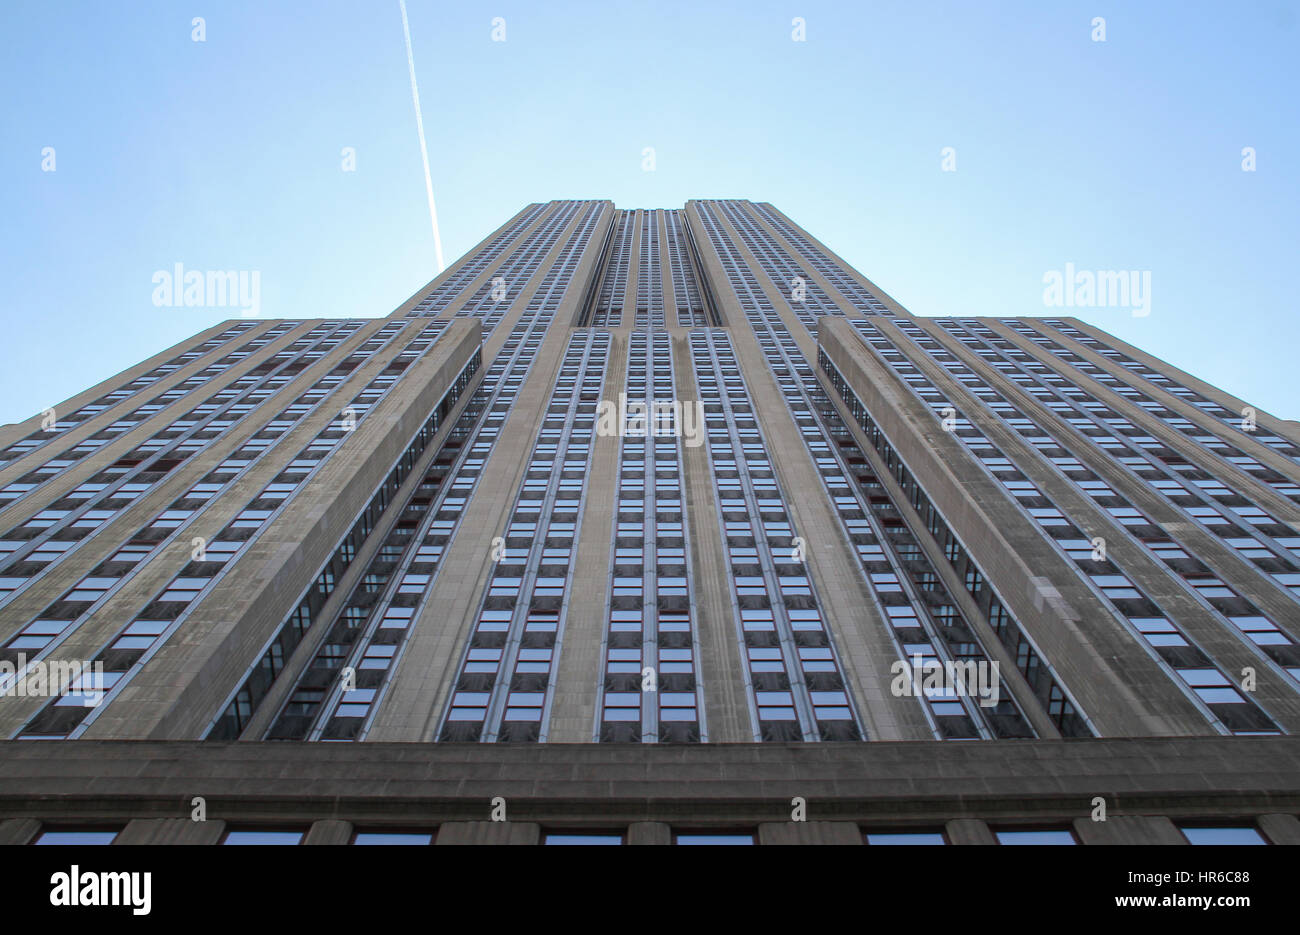 NEW YORK, USA – 25. April 2014: Empire State Building vom Straßenniveau, 102 Stockwerke Wahrzeichen und amerikanische kulturelle Ikone in New York Stockfoto